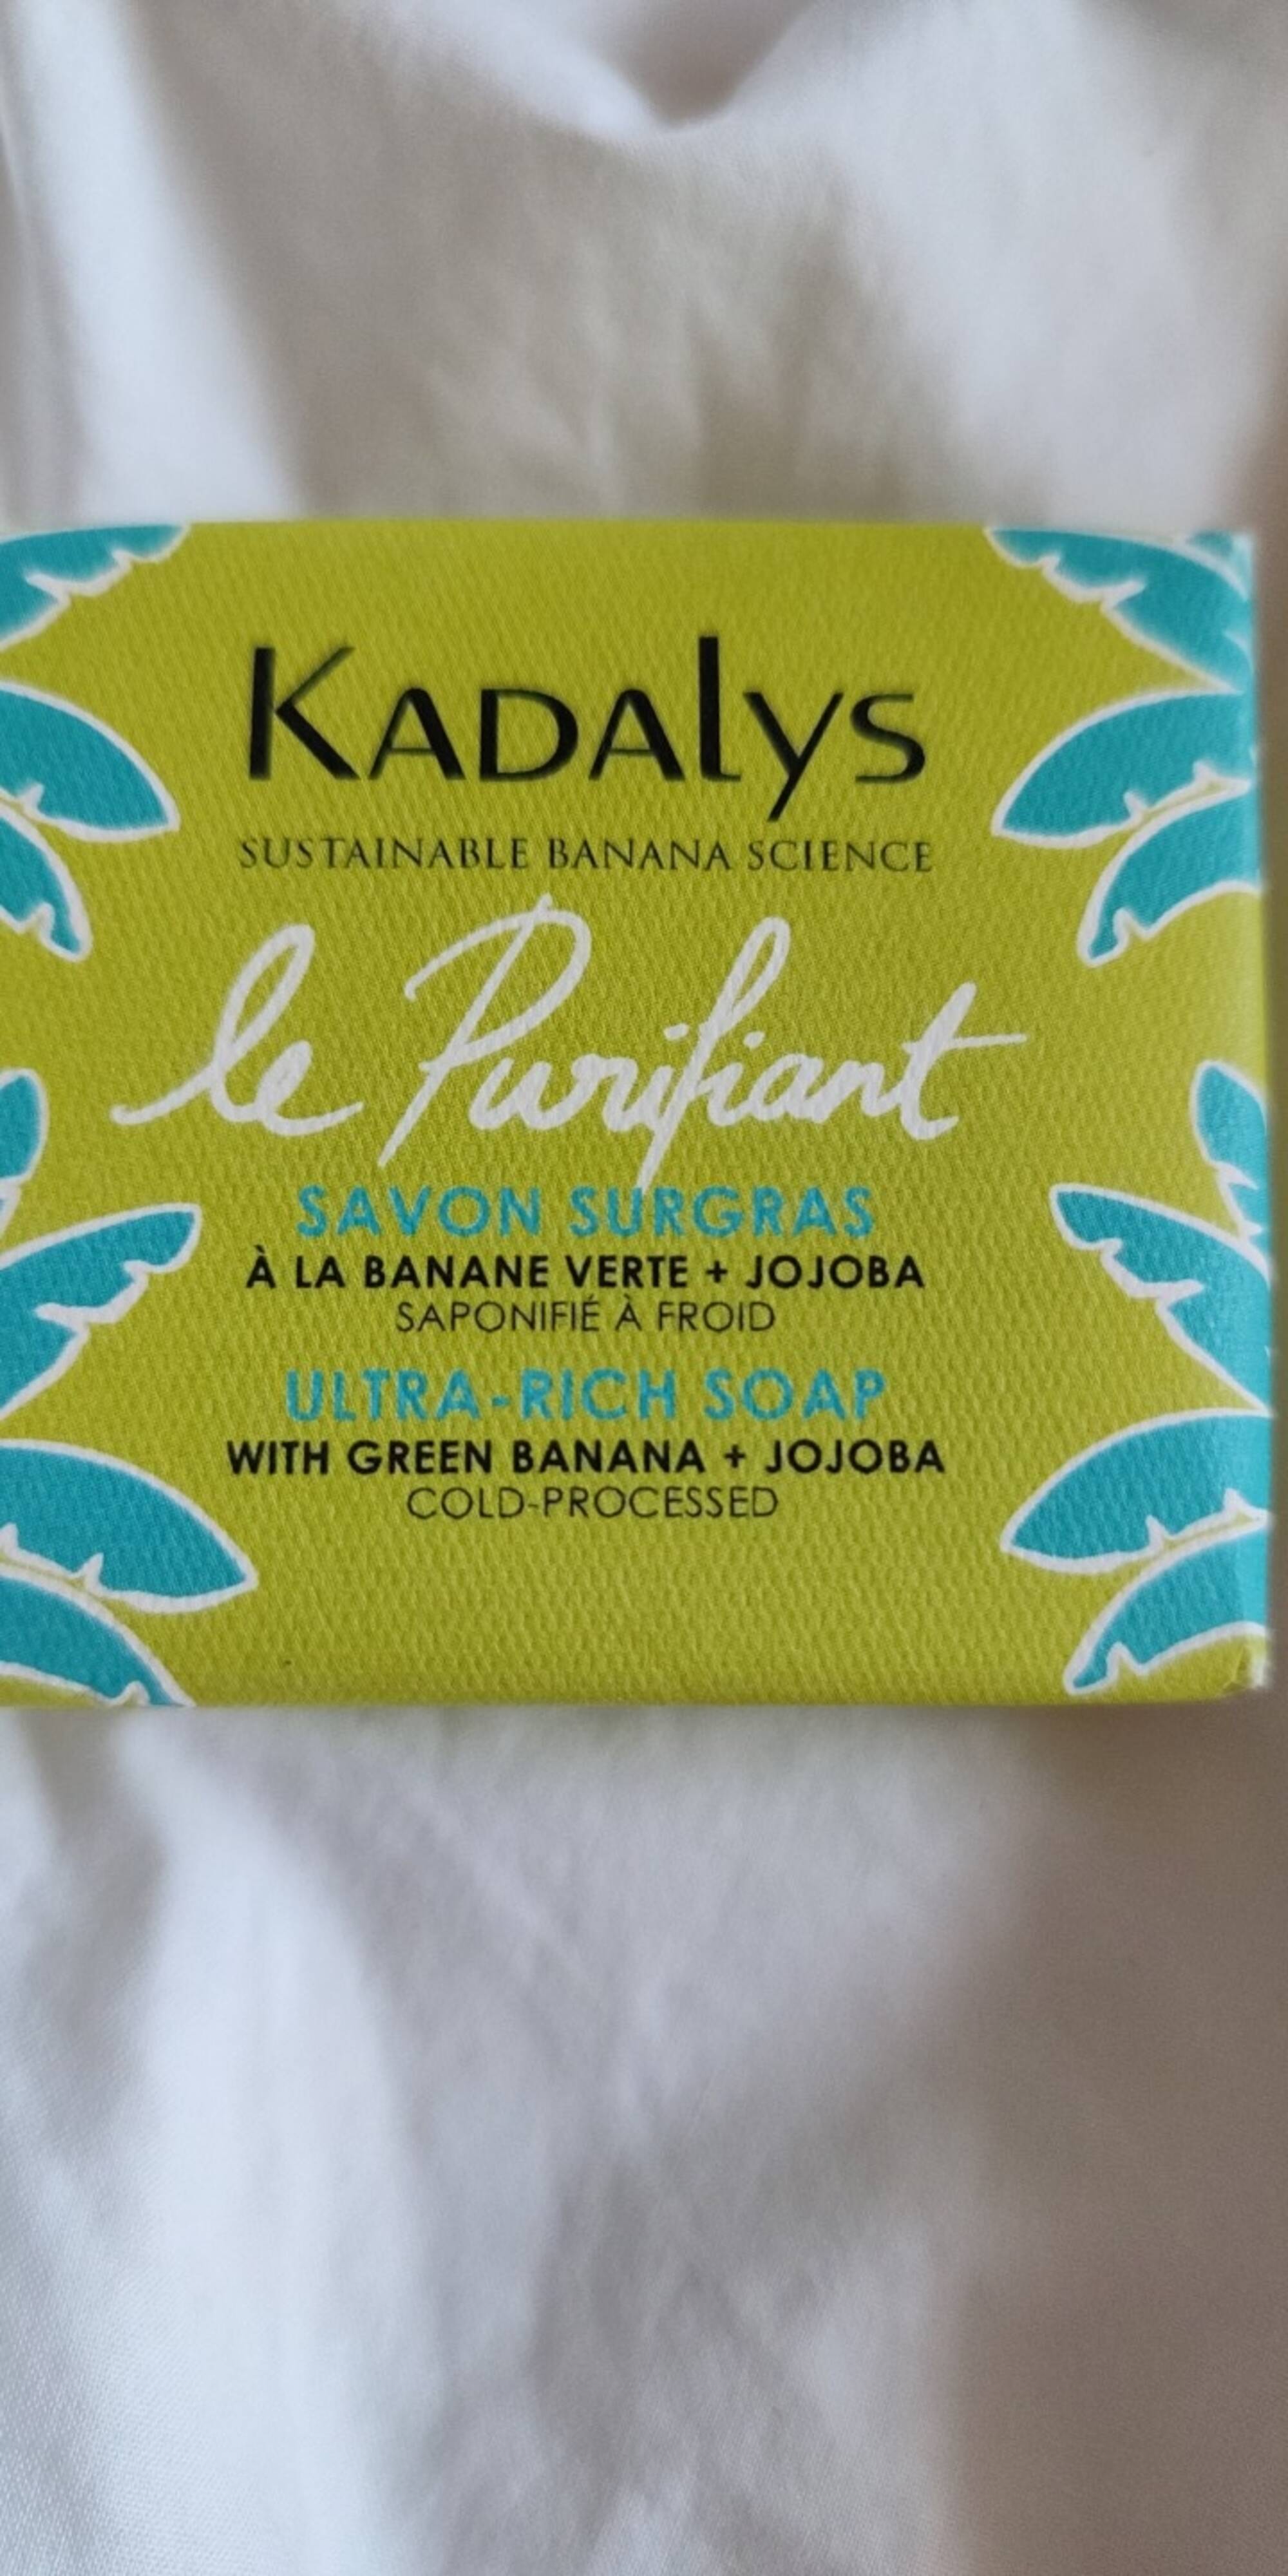 KADALYS - Le purifiant - Savon surgras à la banane verte + jojoba